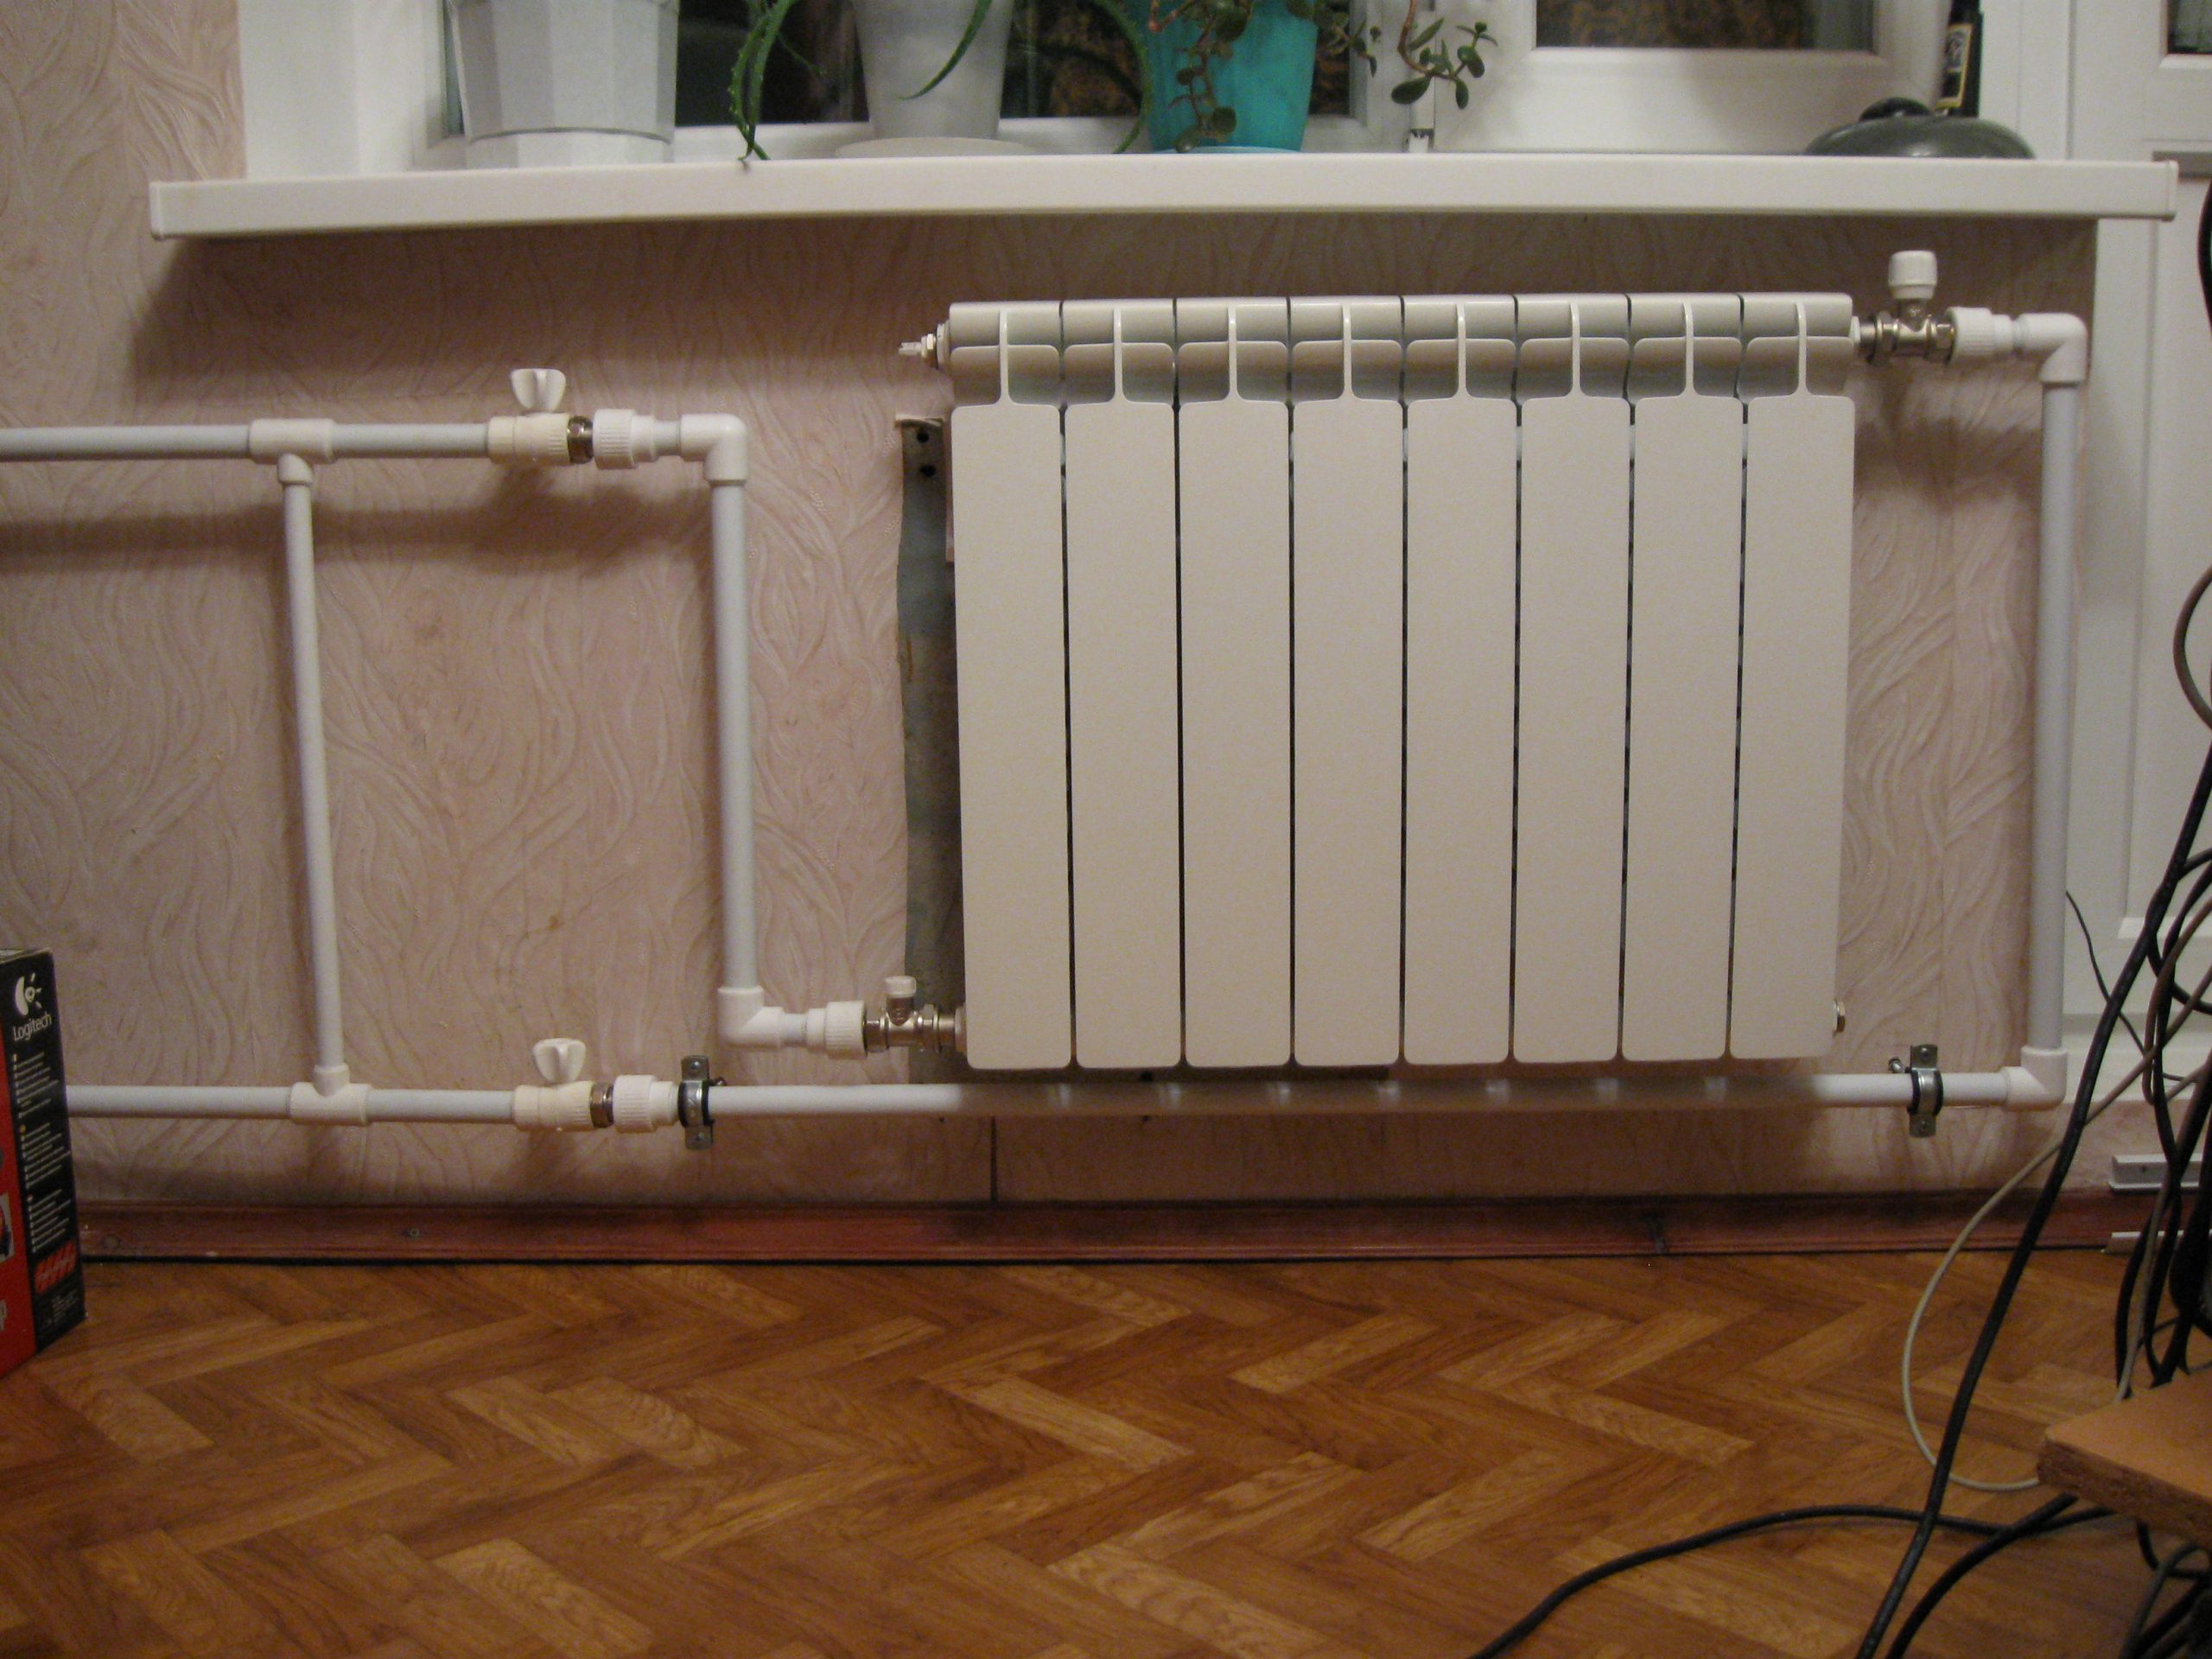 Как правильно выбрать и ставить кран для радиатора системы отопления?